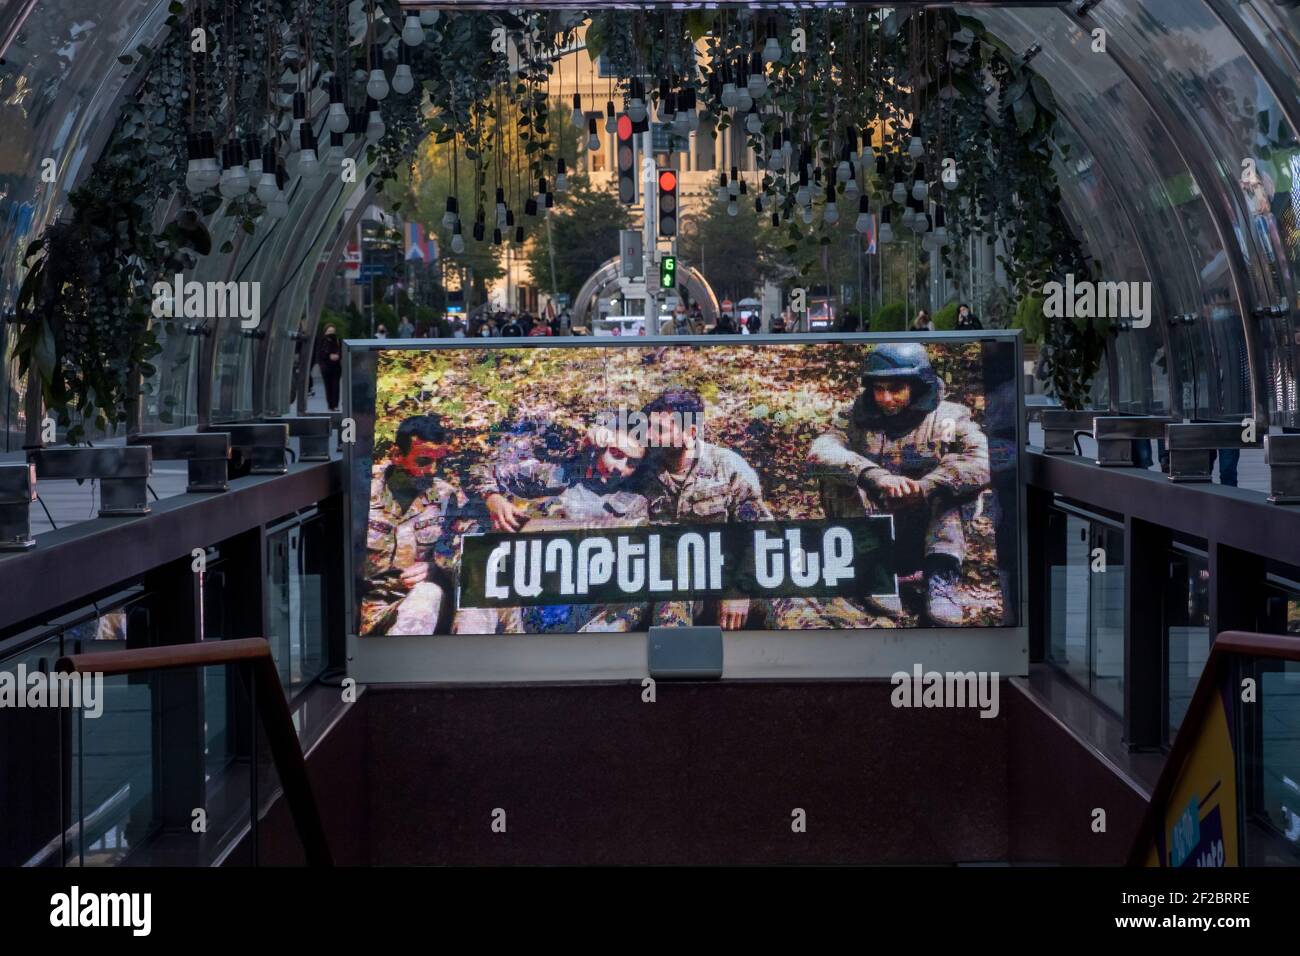 EREVÁN, ARMENIA - NOVIEMBRE de 10: Una gran pantalla de monitor muestra a miembros del Ejército de Defensa de Artsakh durante el conflicto militar entre las fuerzas armenias y azerbaiyanas en la Avenida Norte en el centro de Ereván, capital de Armenia, el 10 de noviembre de 2020. Los combates entre Armenia y Azerbaiyán sobre Nagorno-Karabaj, conocida también como la República de Artsakh, estallaron a finales de septiembre en una guerra de seis semanas con ambos países acusándose mutuamente de provocación que dejó miles de muertos. Foto de stock